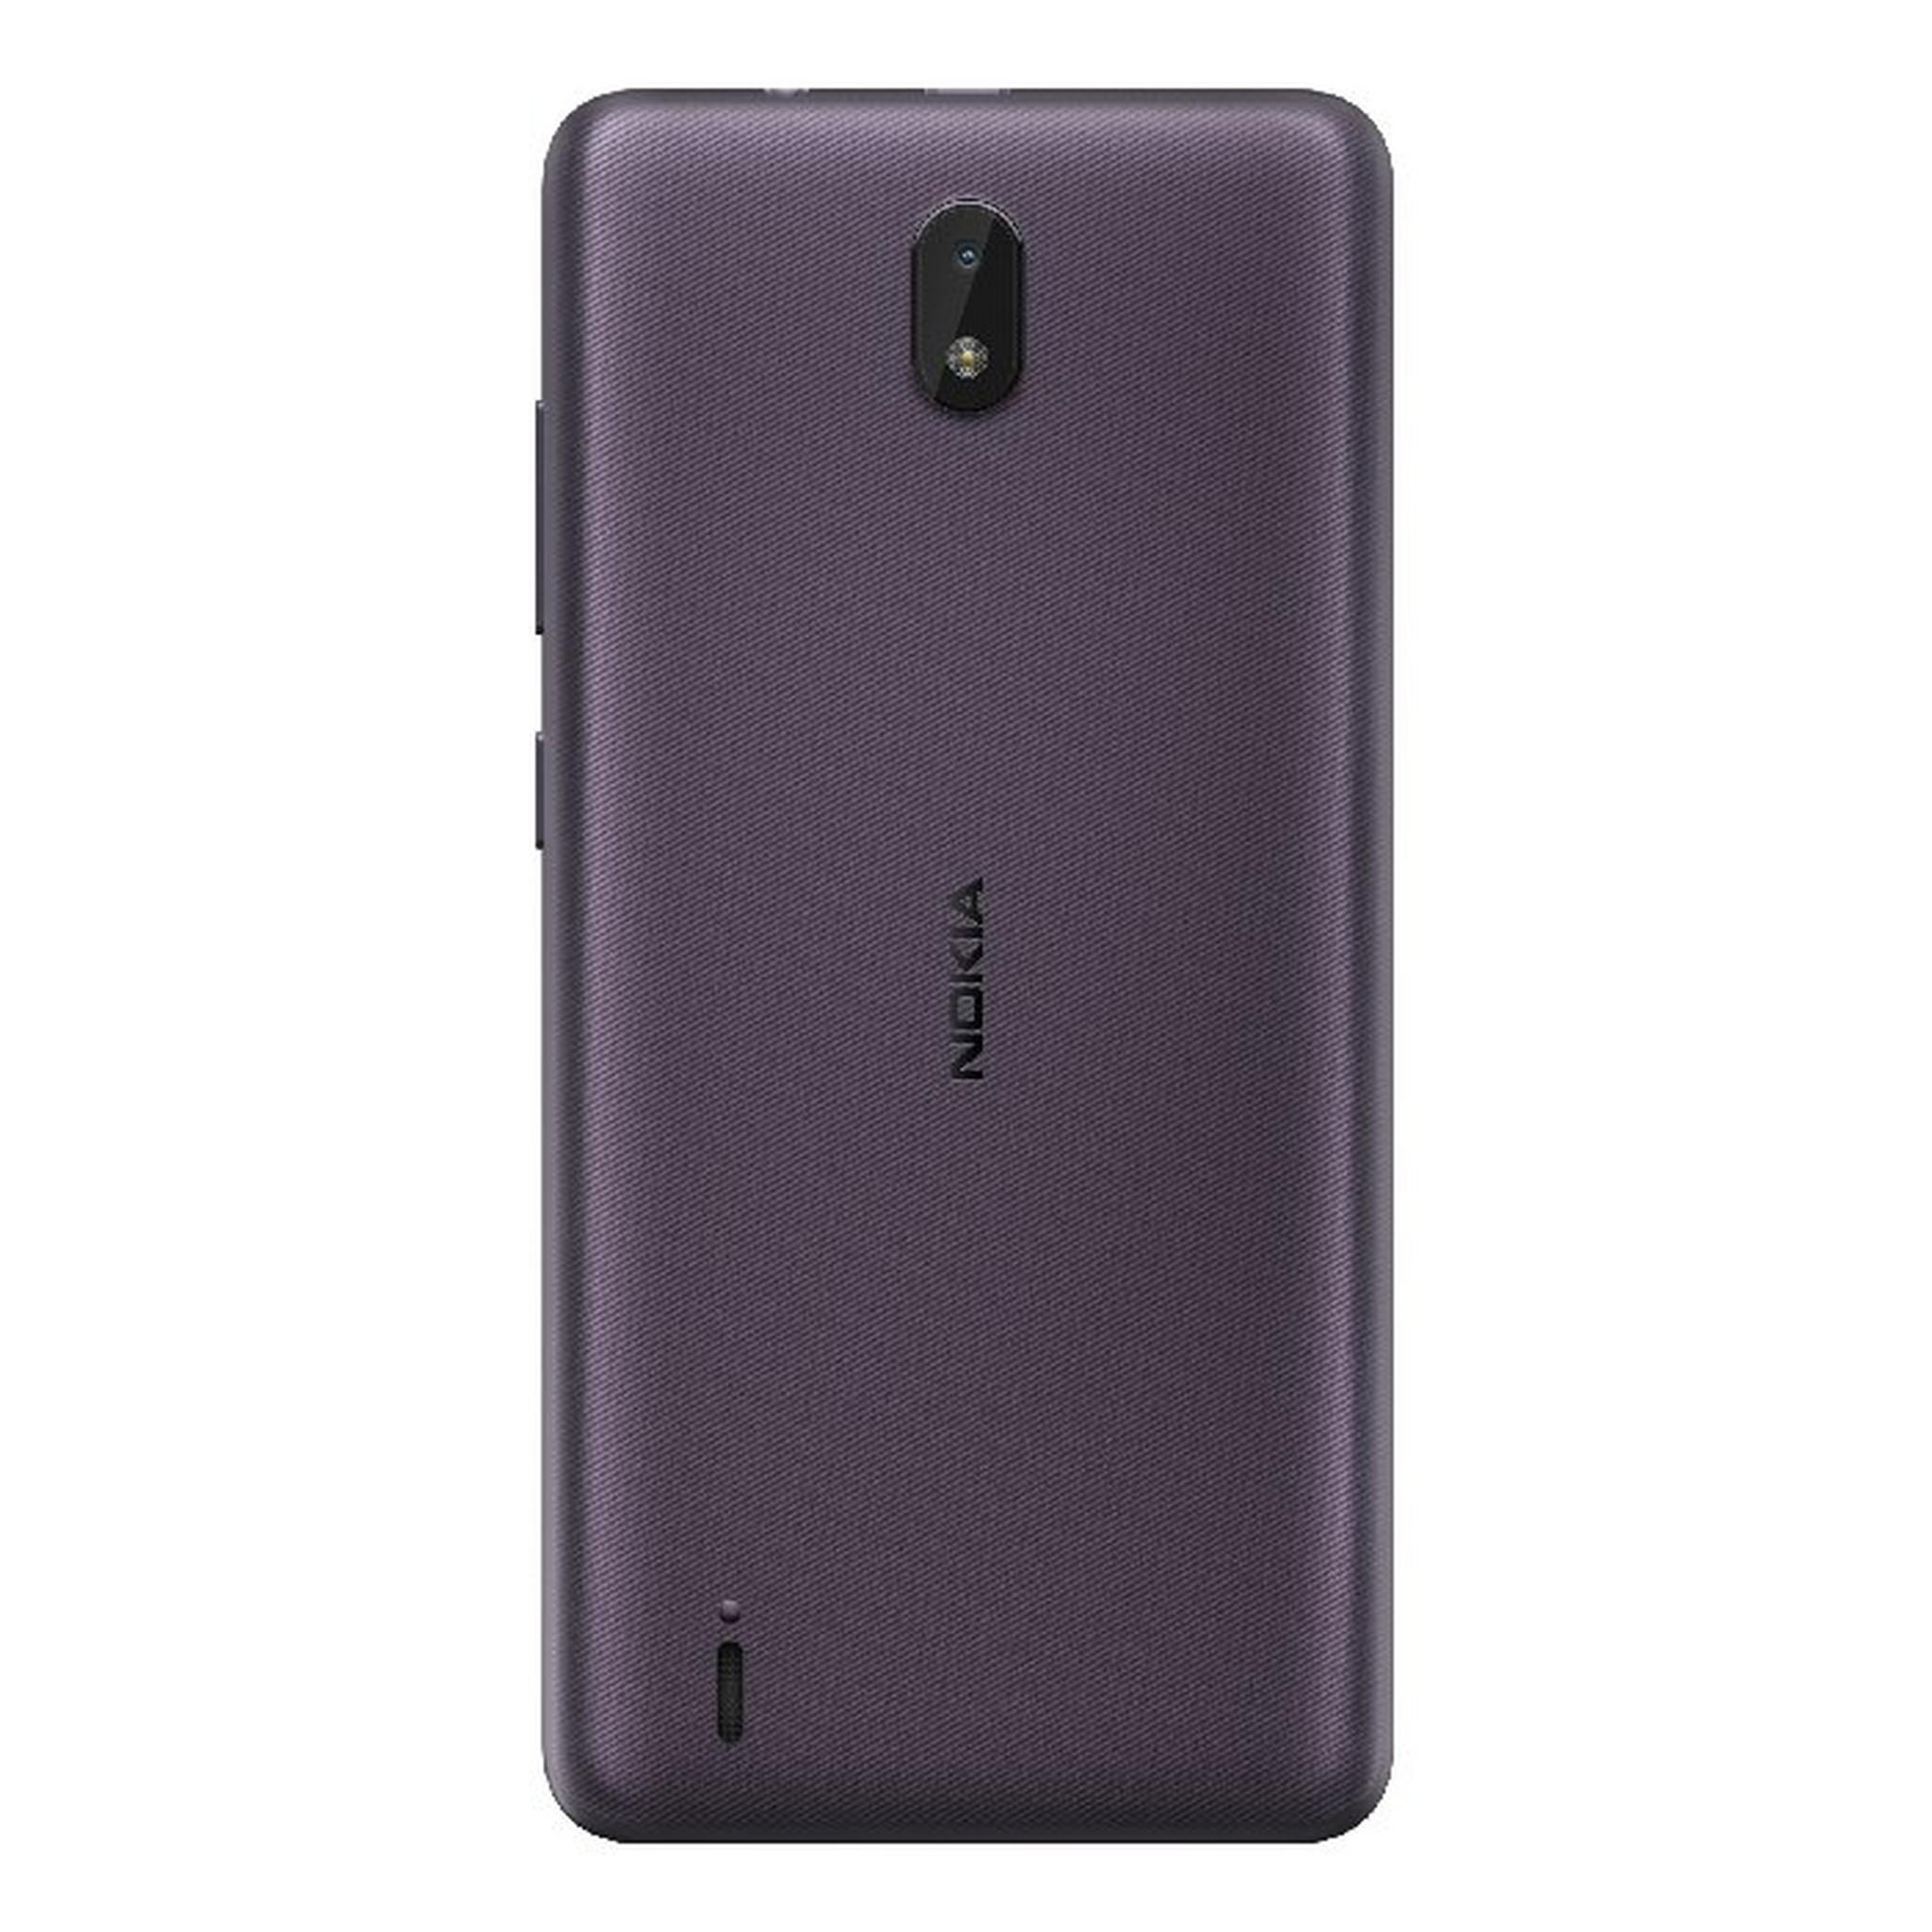 Nokia C1 SE16 GB Dual Sim Phone - Purple